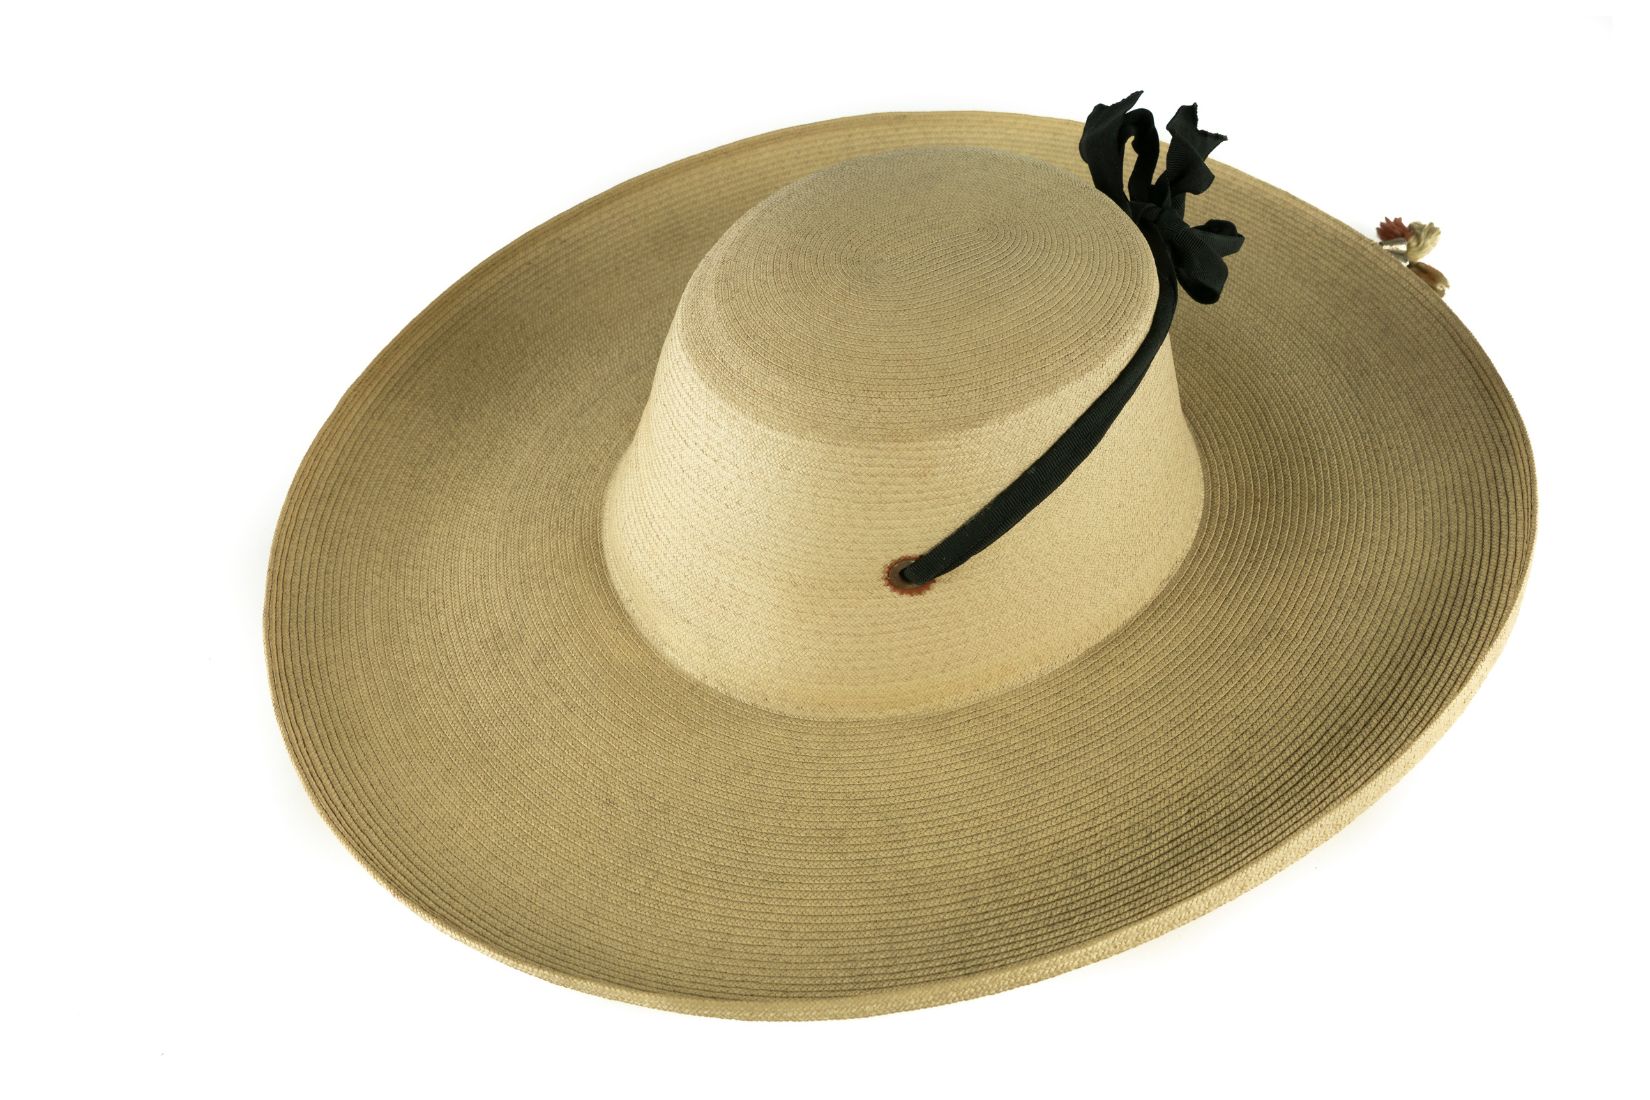 Sombrero de palma tejida. Artesano desconocido. Chilapa, Gro. Col. Populart. (Foto: EKV).